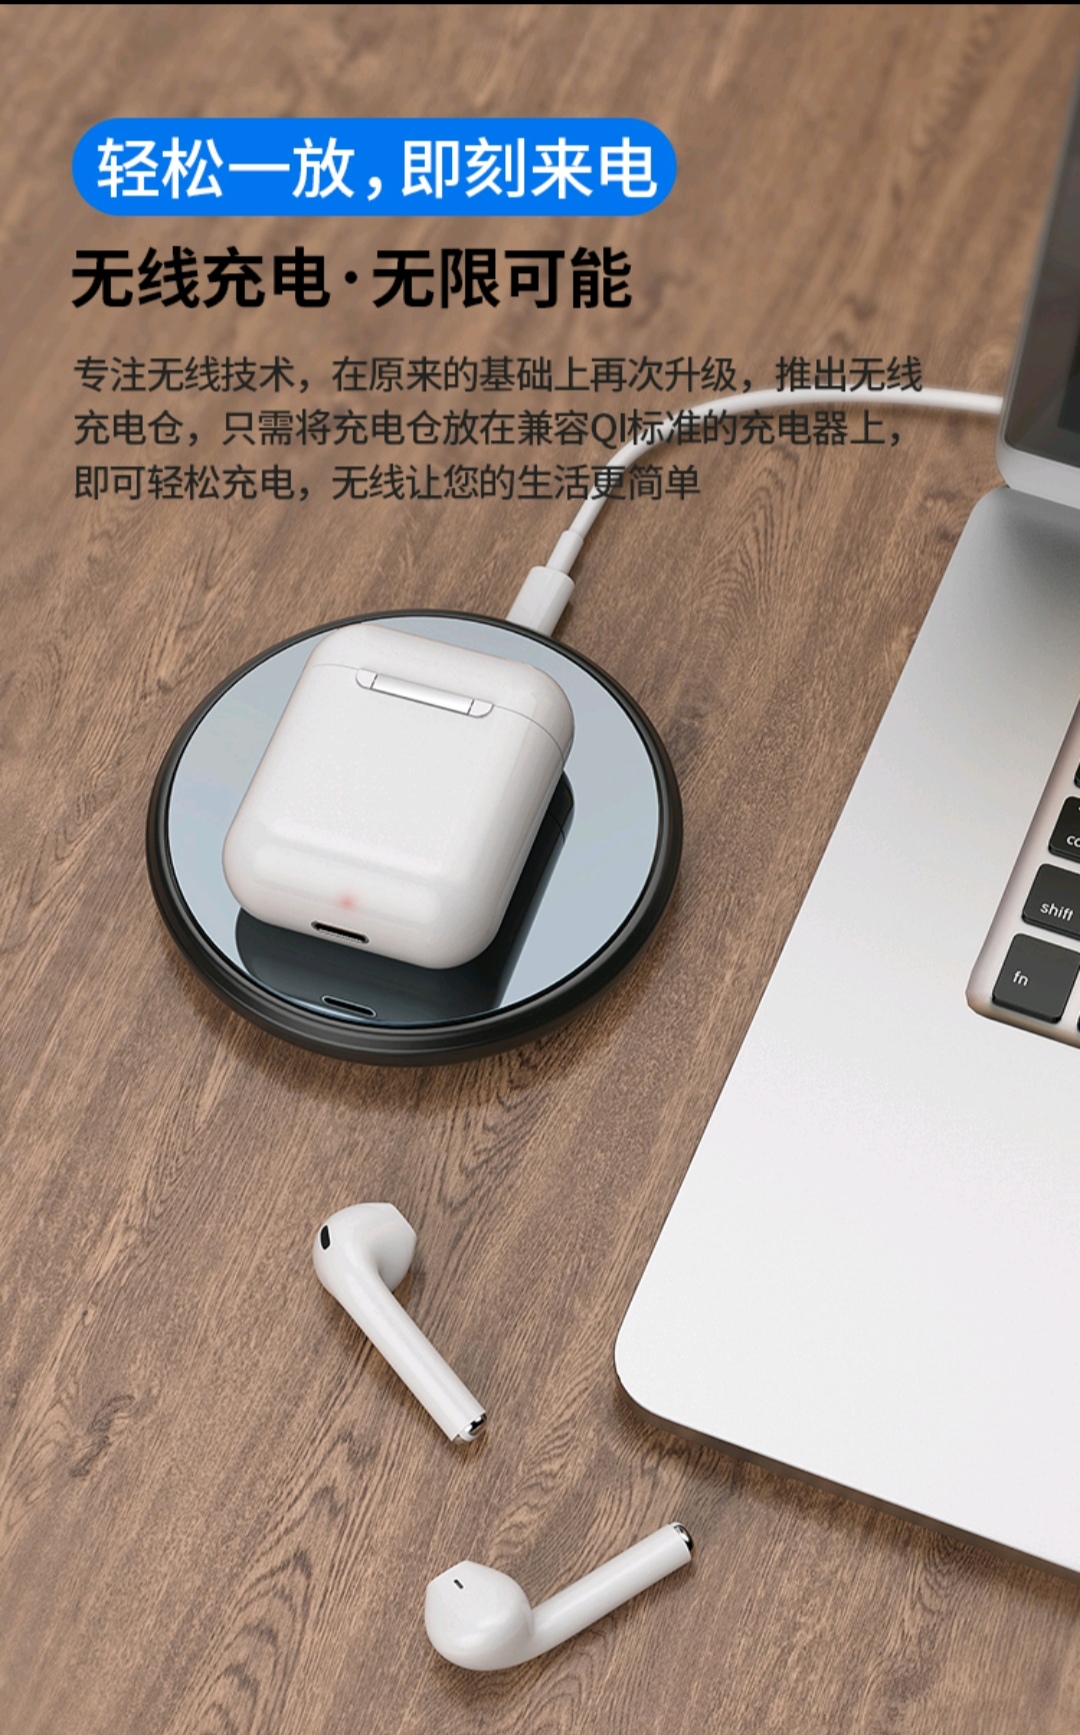 包邮恩科(enkor)ew13 无线蓝牙耳机适用于苹果iphone8/xr/max air迷你